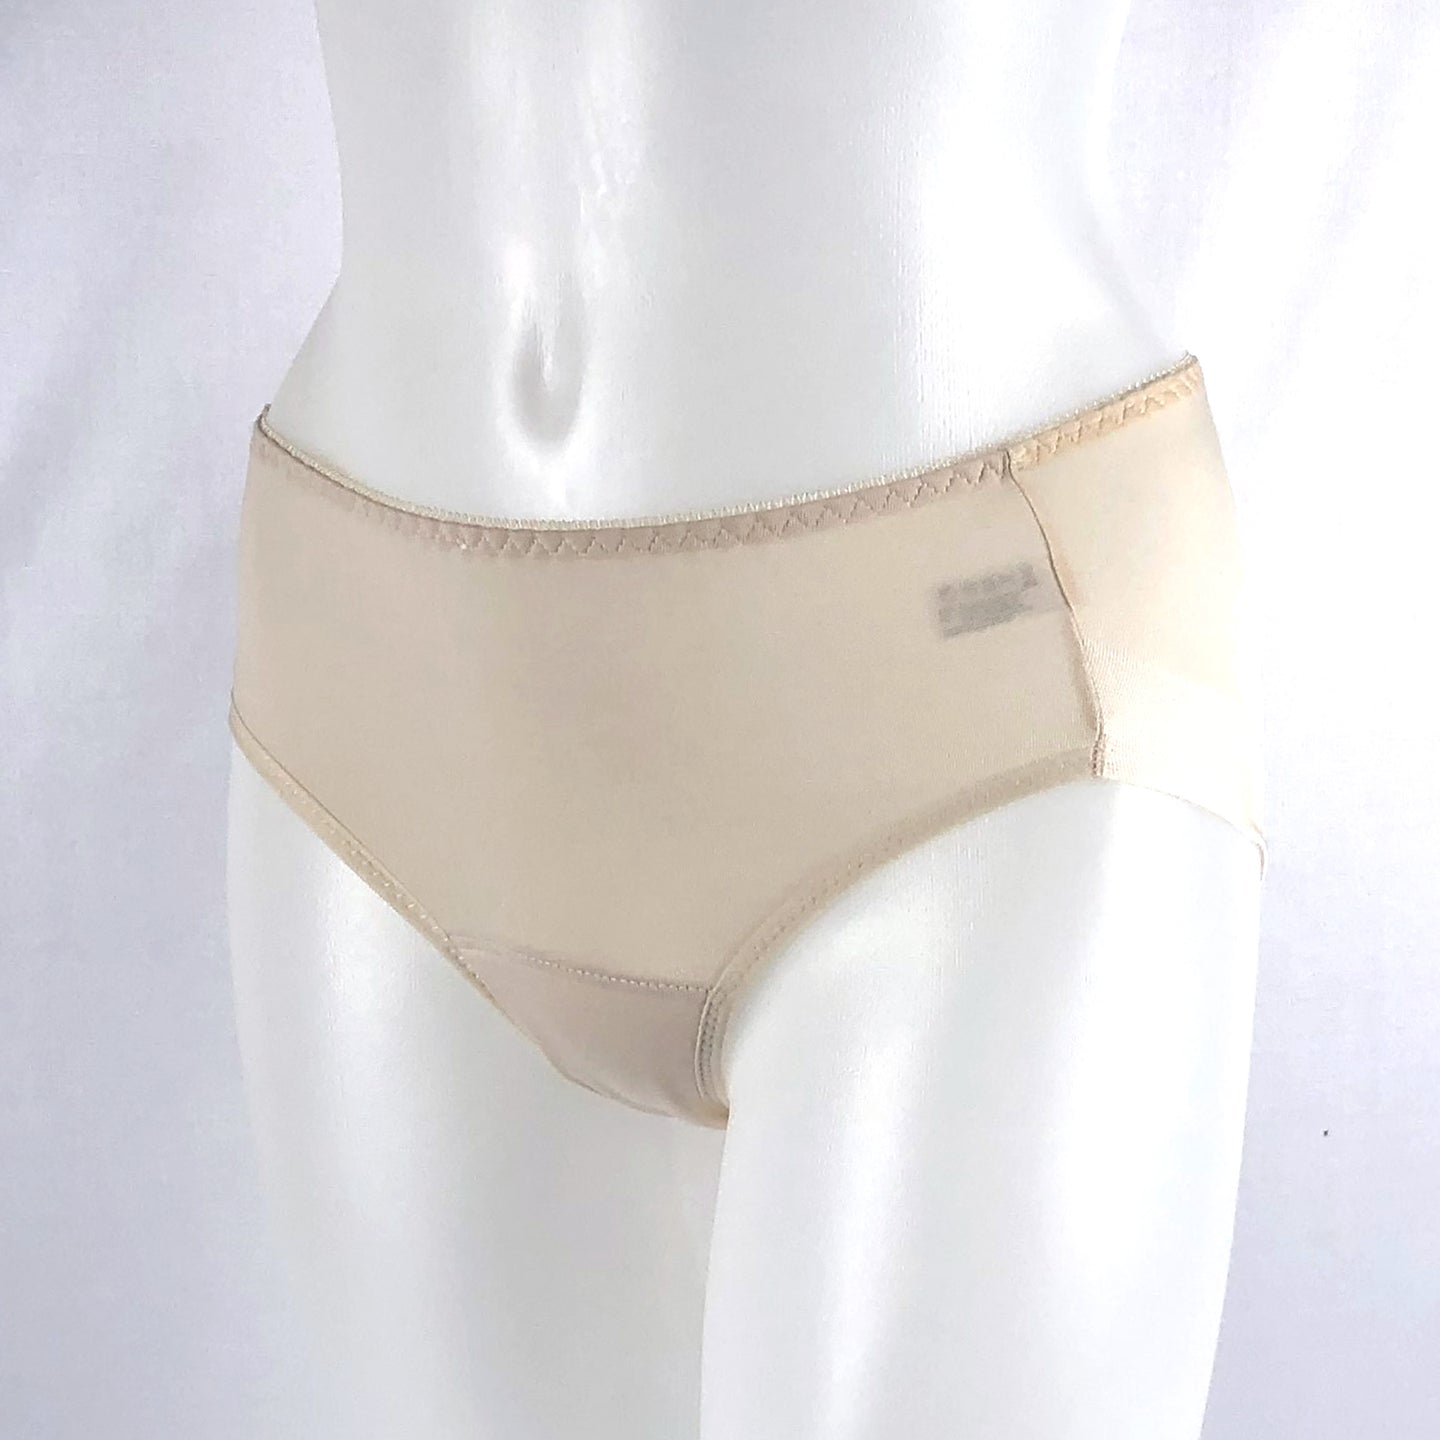 Wellrun® Tencel Liner Panties Underwear for Women